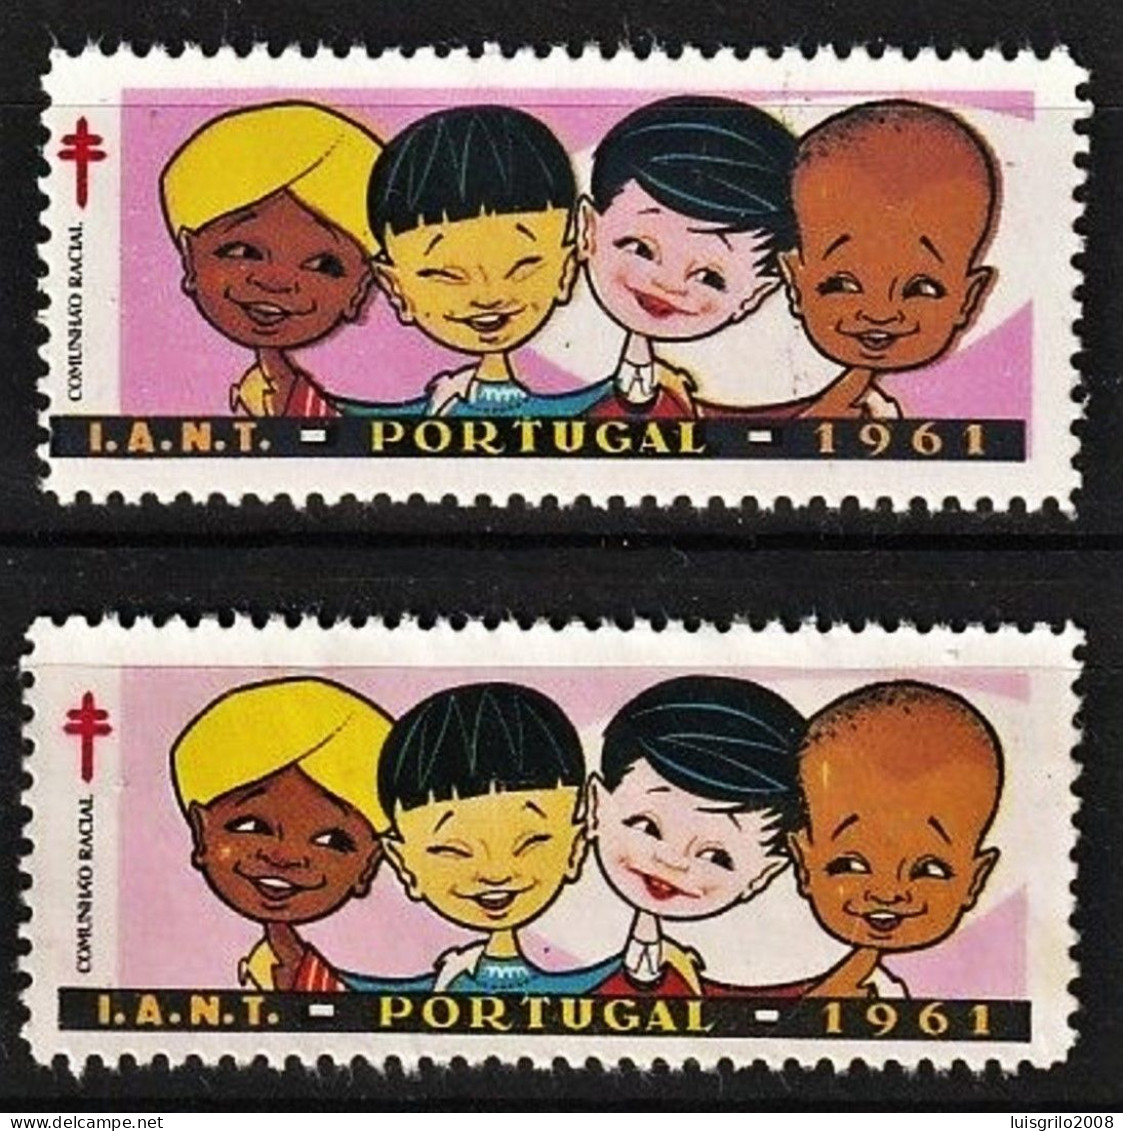 Vignettes/ Vinhetas, Portugal 1961 - Comunhão Racial, I.A.N.T. -||-  Série Complète - MNH - Ortsausgaben